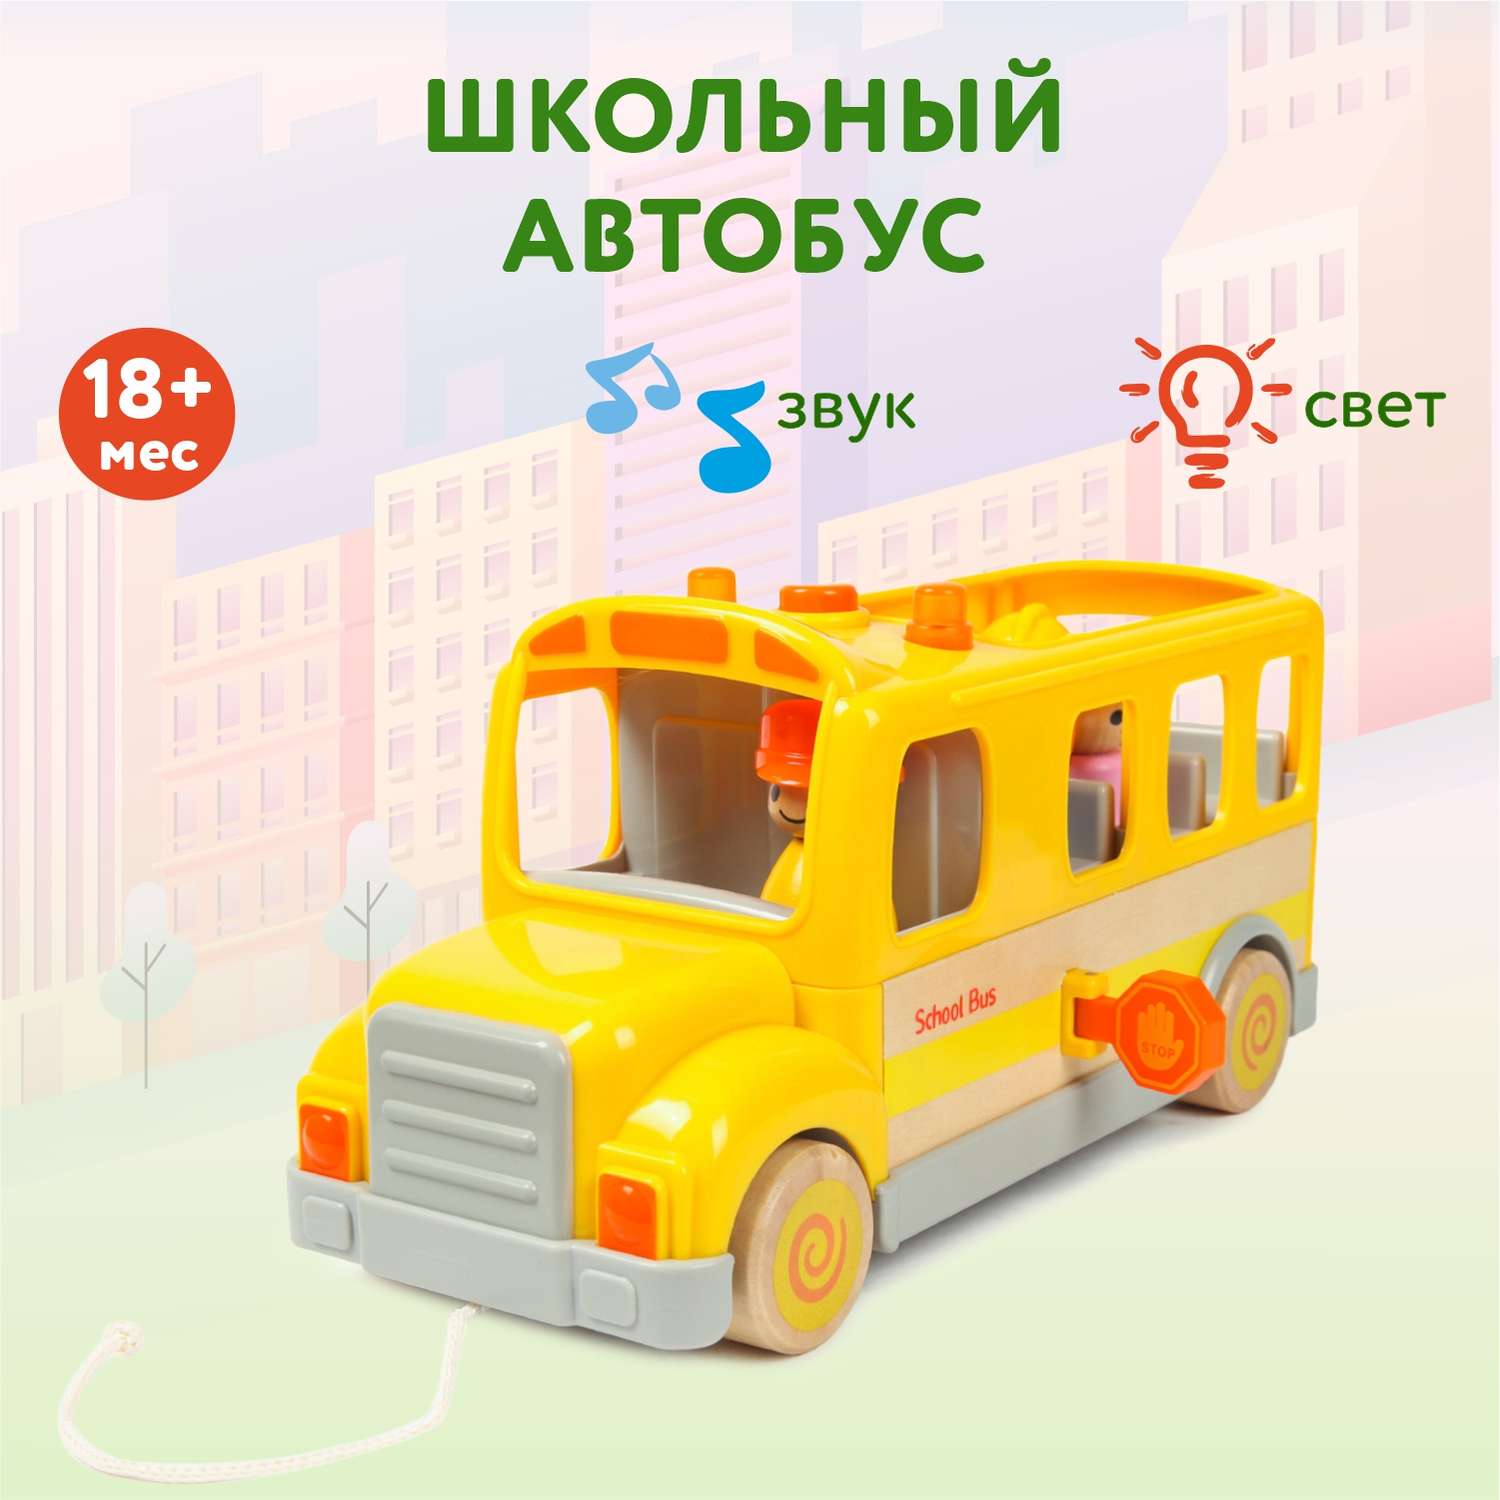 Игрушка Wanborns Школьный автобус WB001-J - фото 1